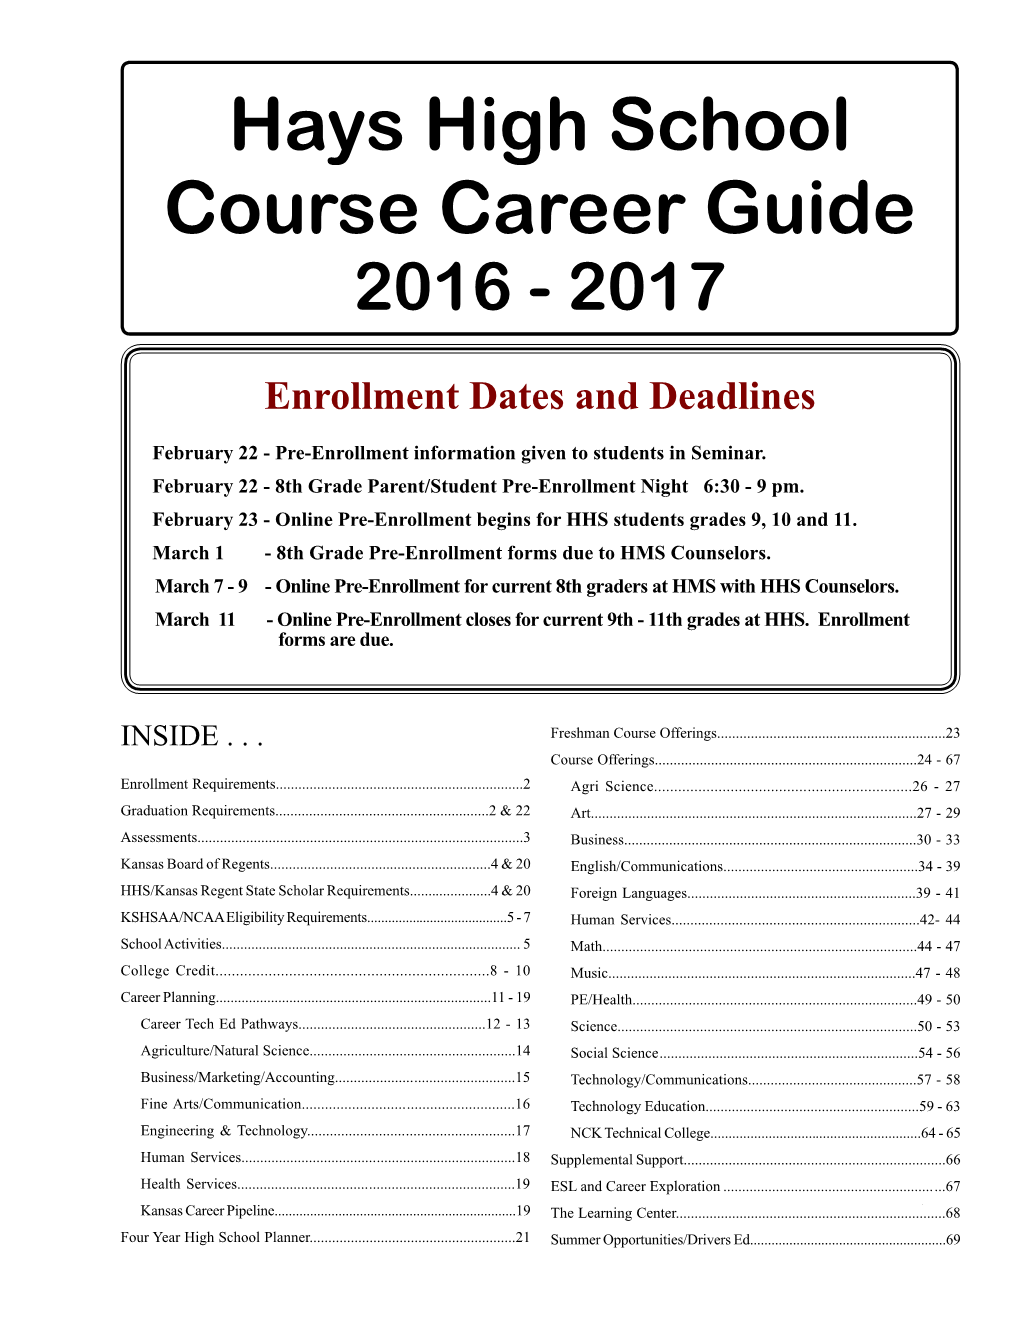 16-17 Course Guide(Feb